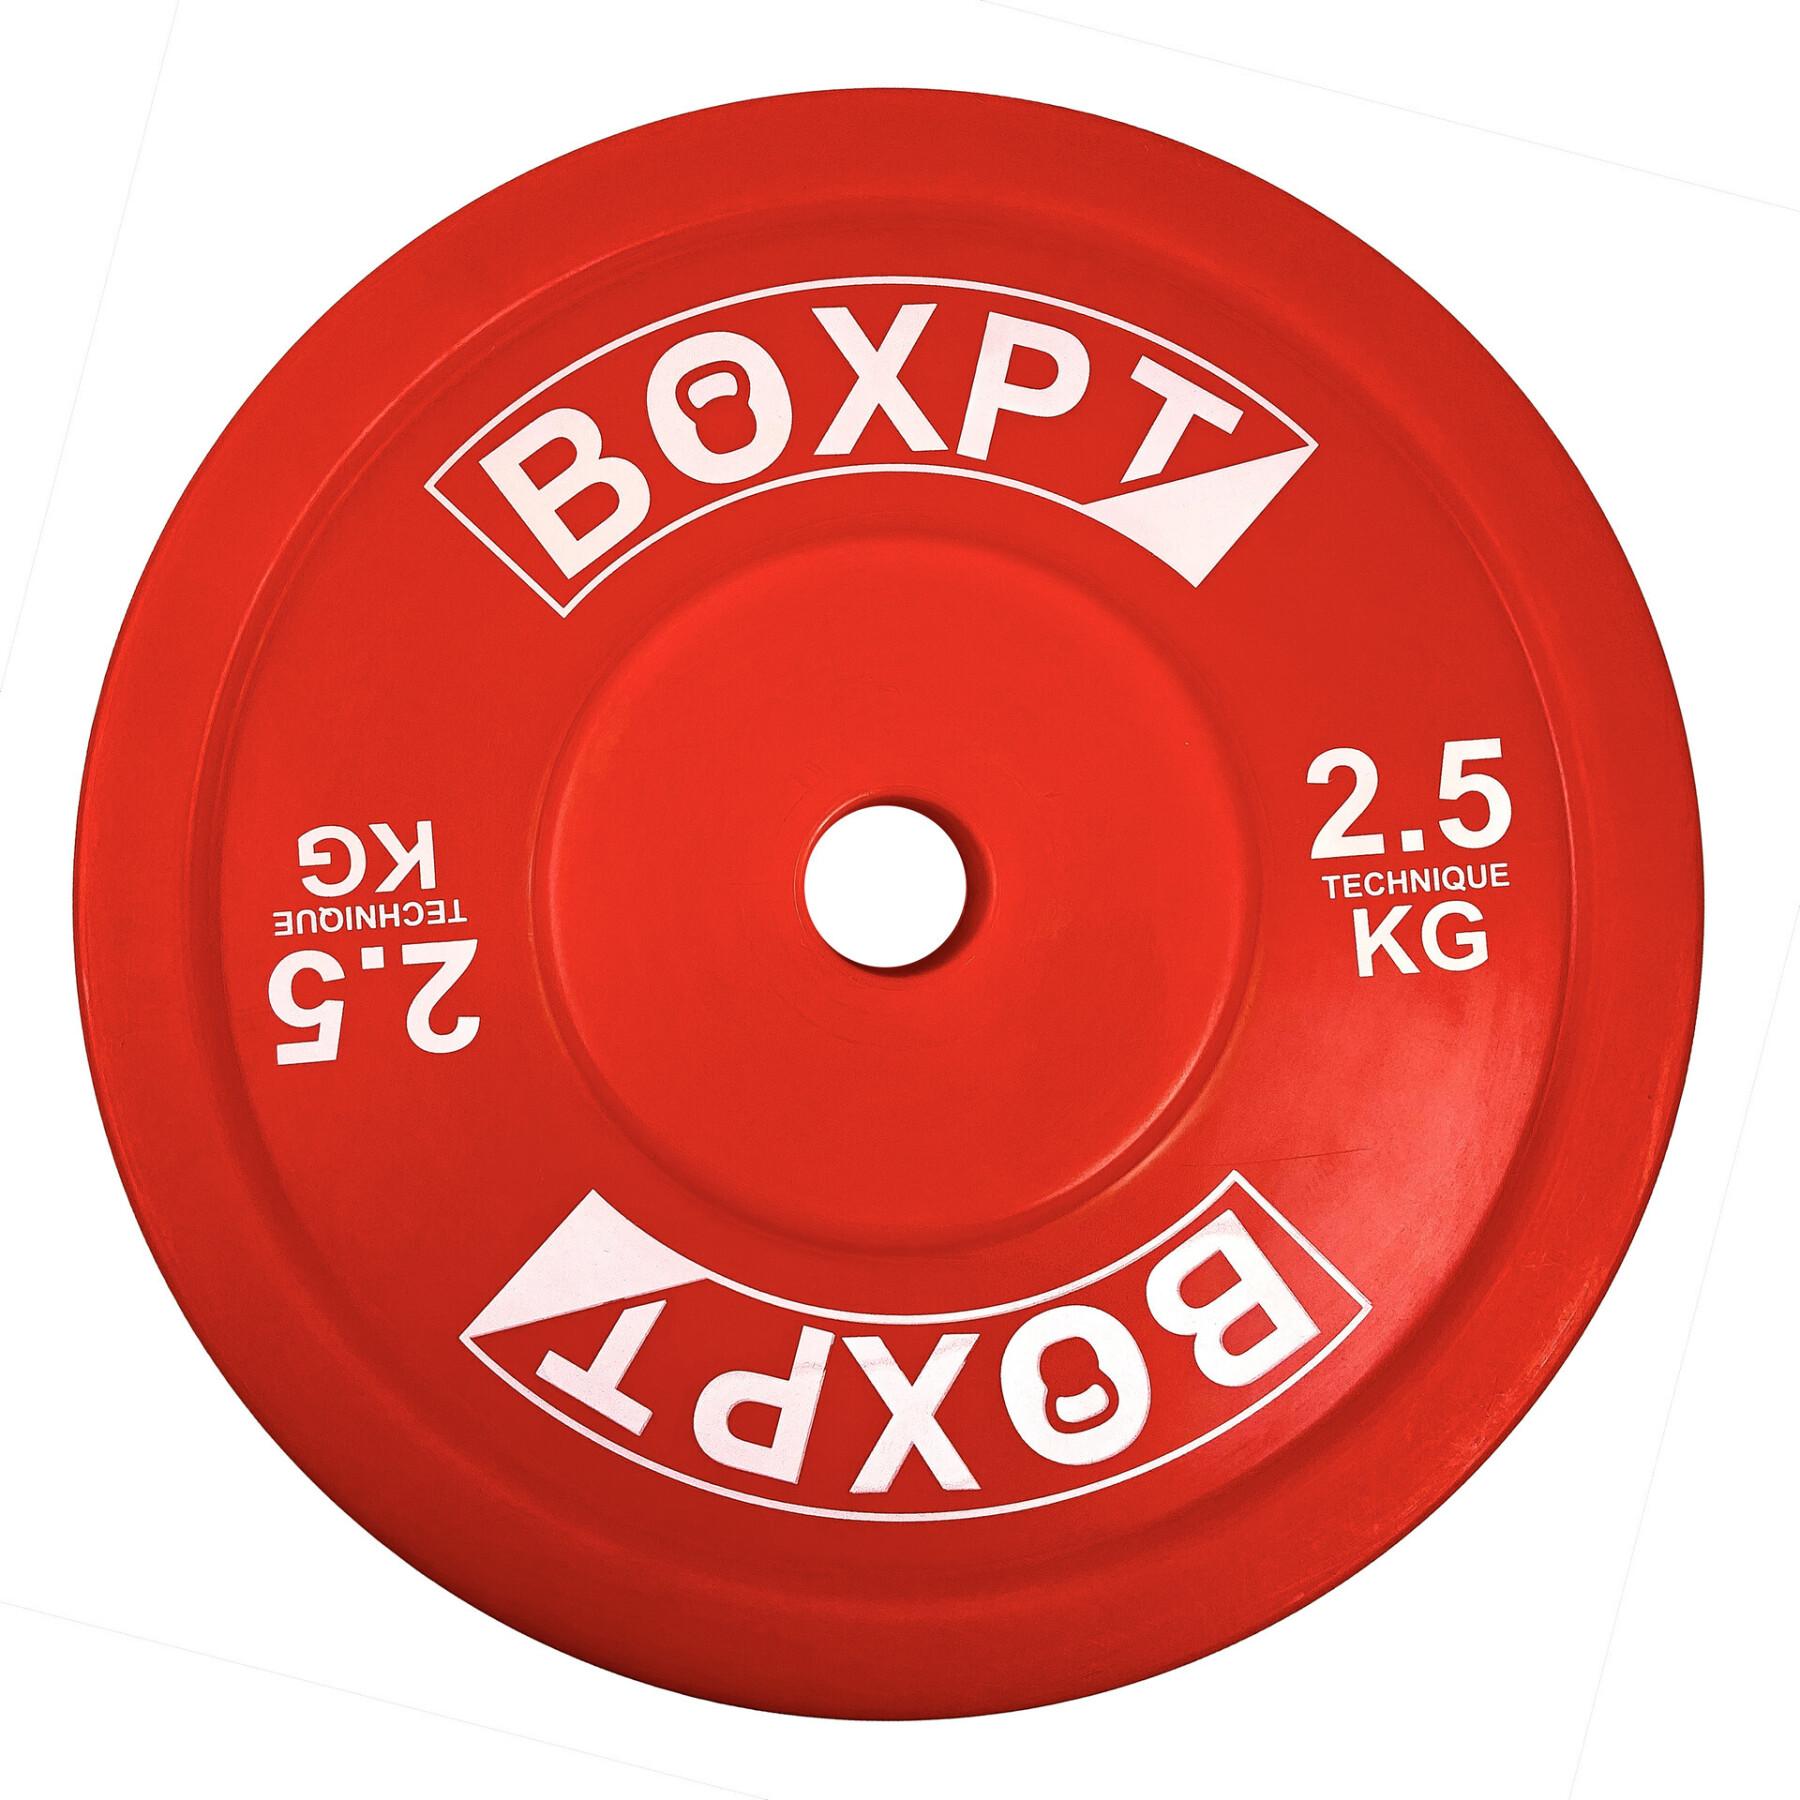 Dysk kulturystyczny Boxpt Technique - 2,5 kg